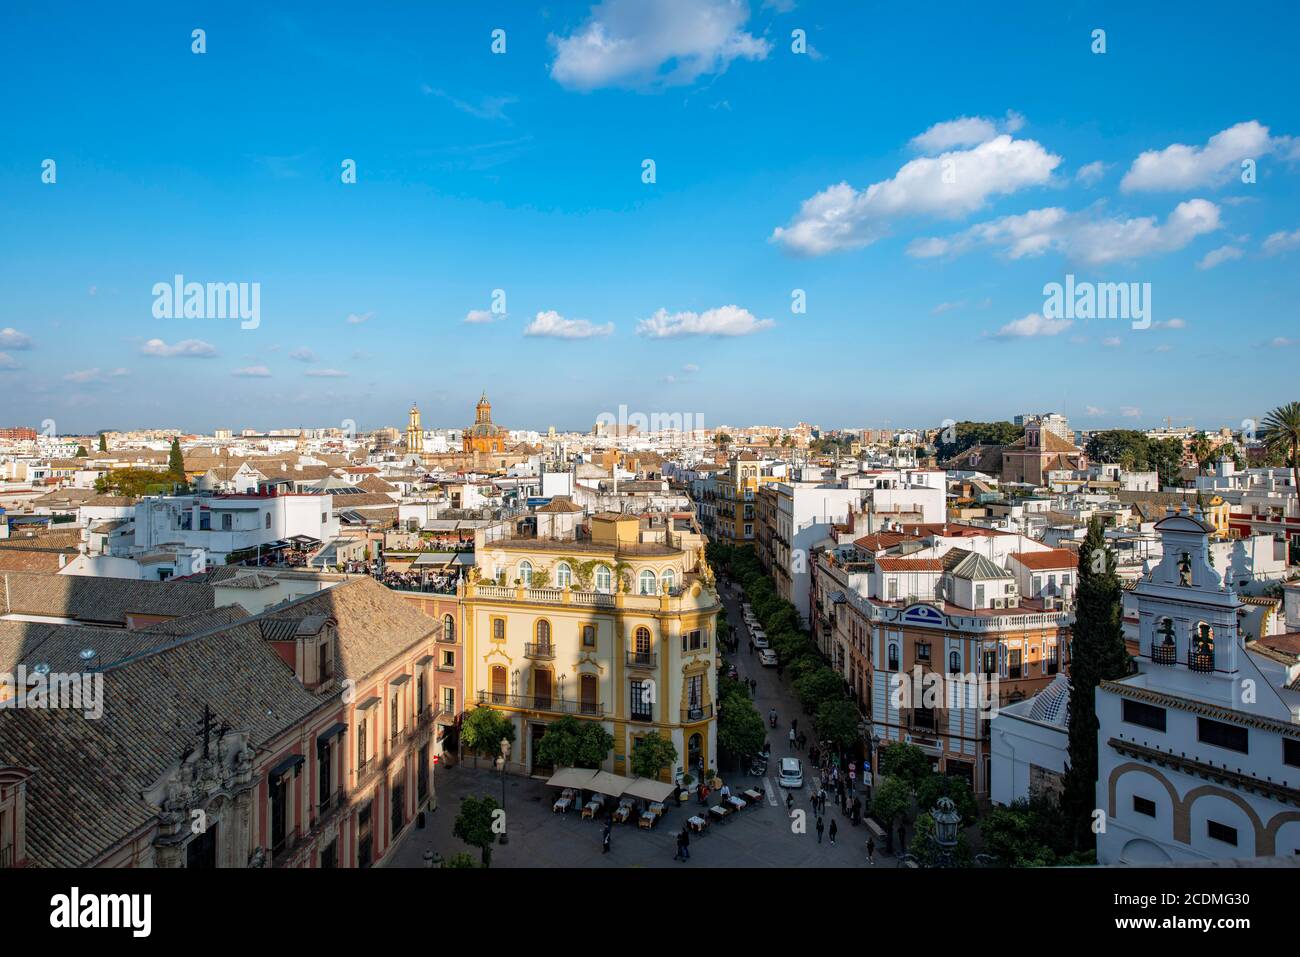 Blick auf die Stadt, Blick über die Altstadt vom Turm La Giralda, mit Plaza Virgen de los Reyes, Kathedrale von Sevilla, Sevilla, Andalusien, Spanien Stockfoto